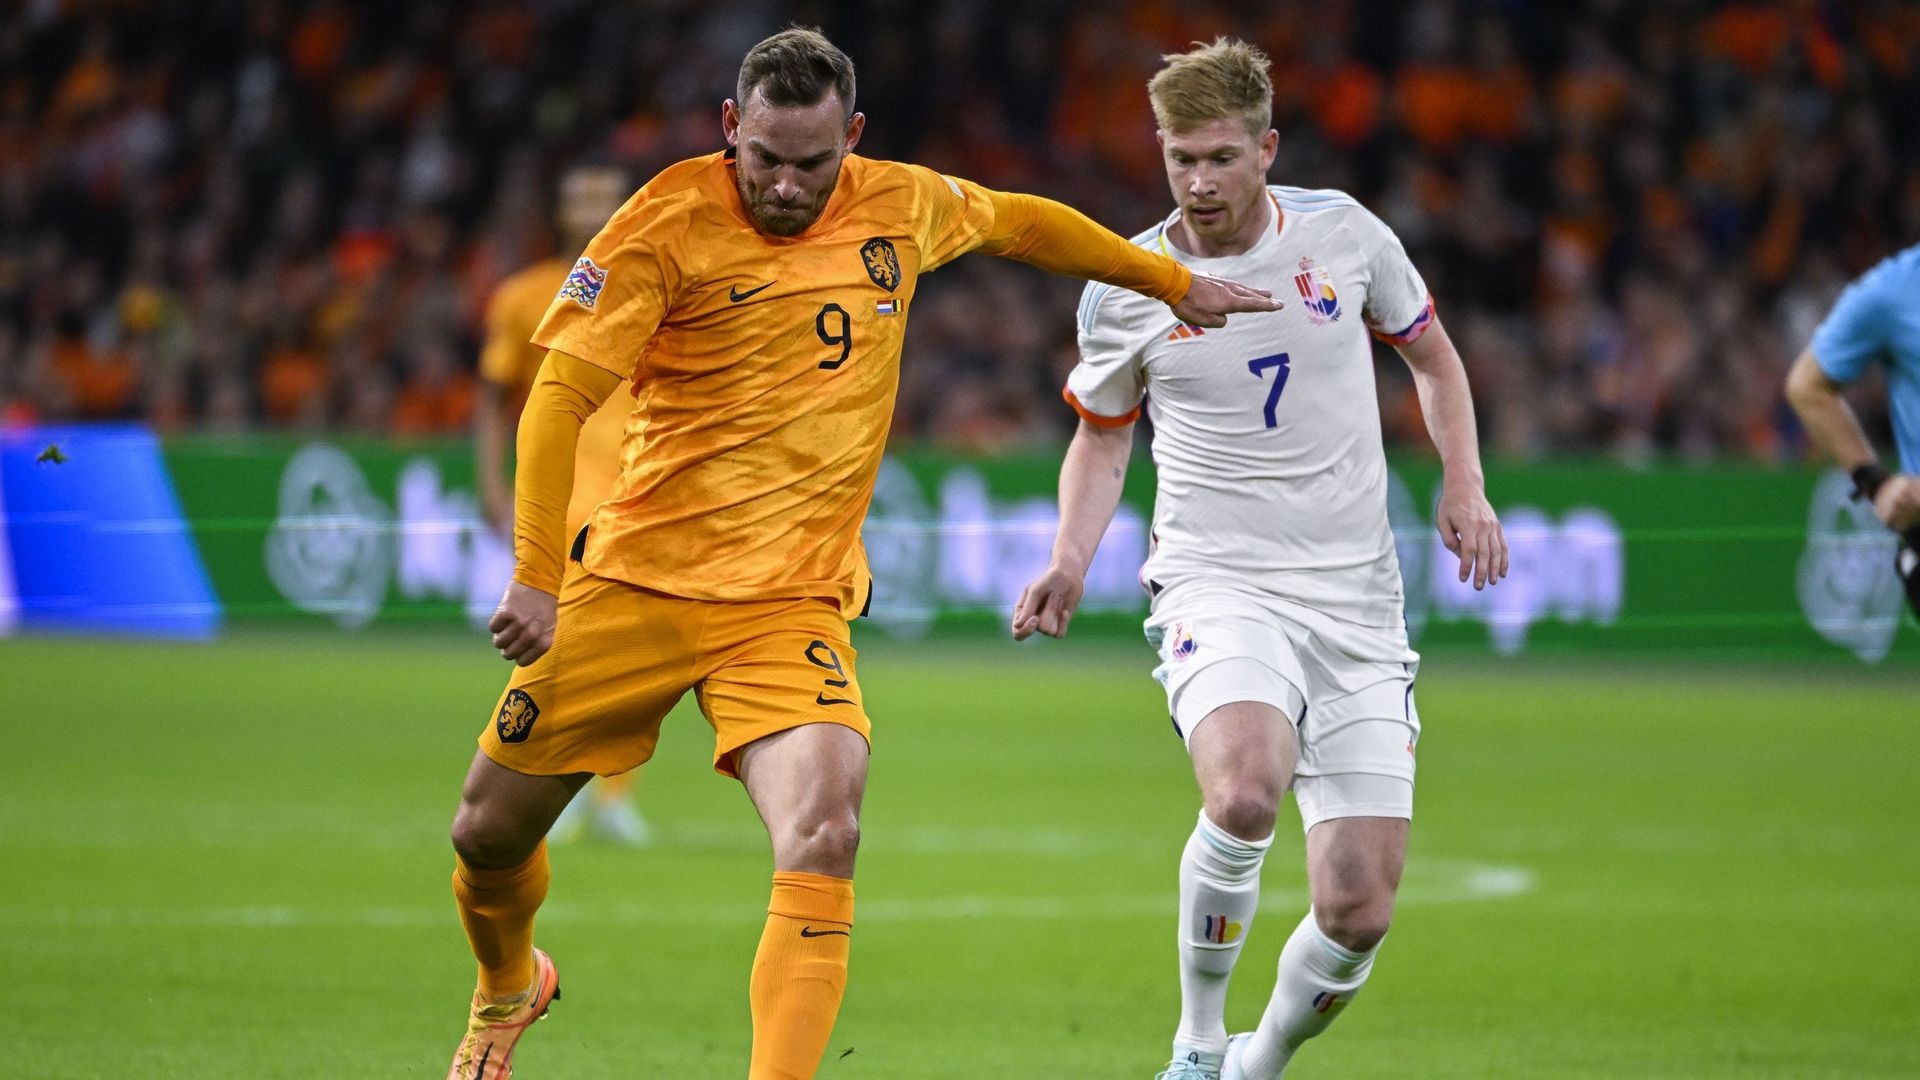 Après 5 ans sans présence en équipe nationale, Vincent Janssen s’invite à la Coupe du monde alors qu’il avait son grand retour chez les Oranjes en juin dernier.